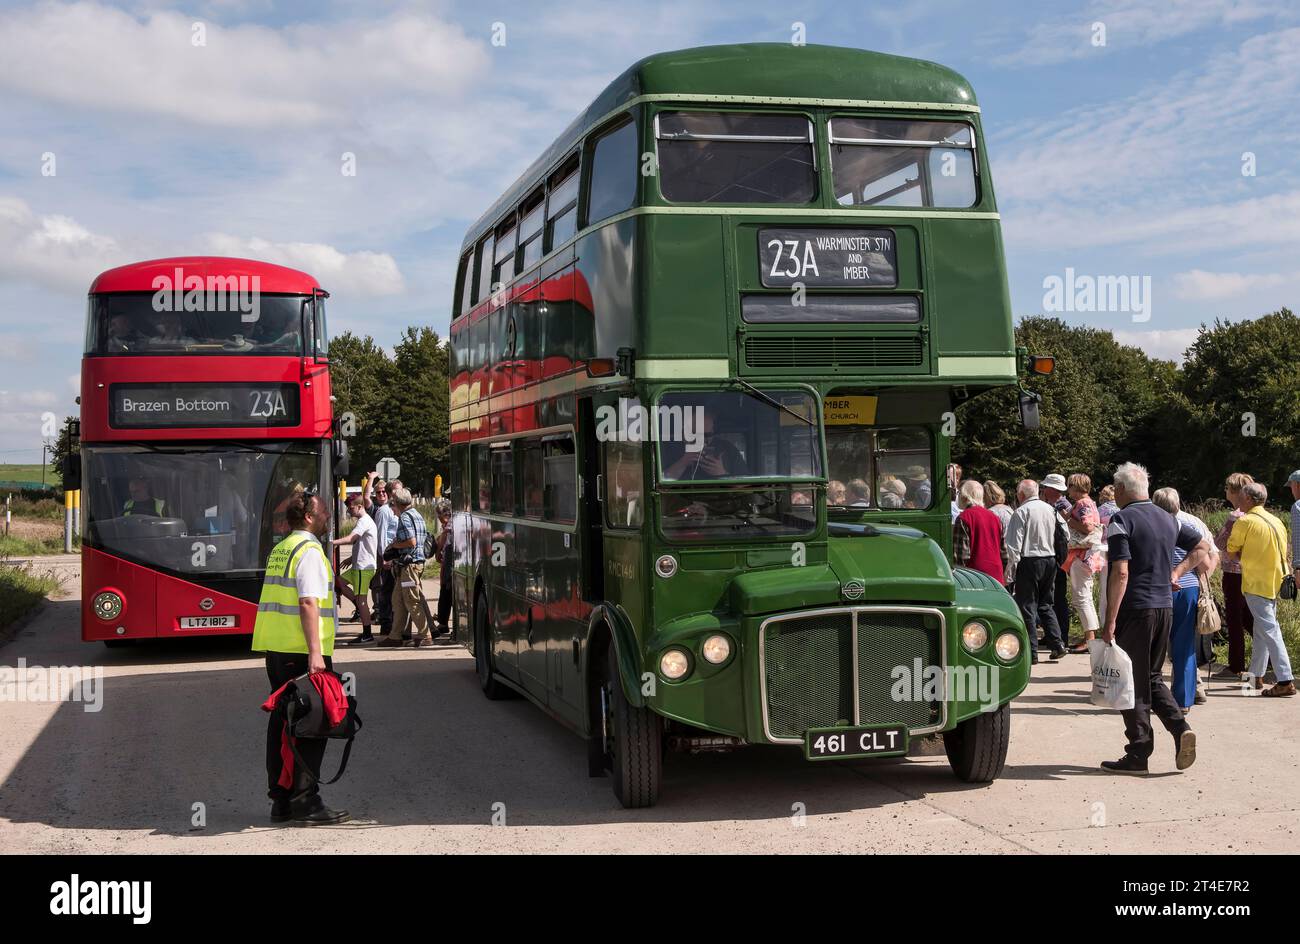 Imberbus, Londres transport routemaster bus Warminster à Imber et au-delà de 2017 jours de course Banque D'Images